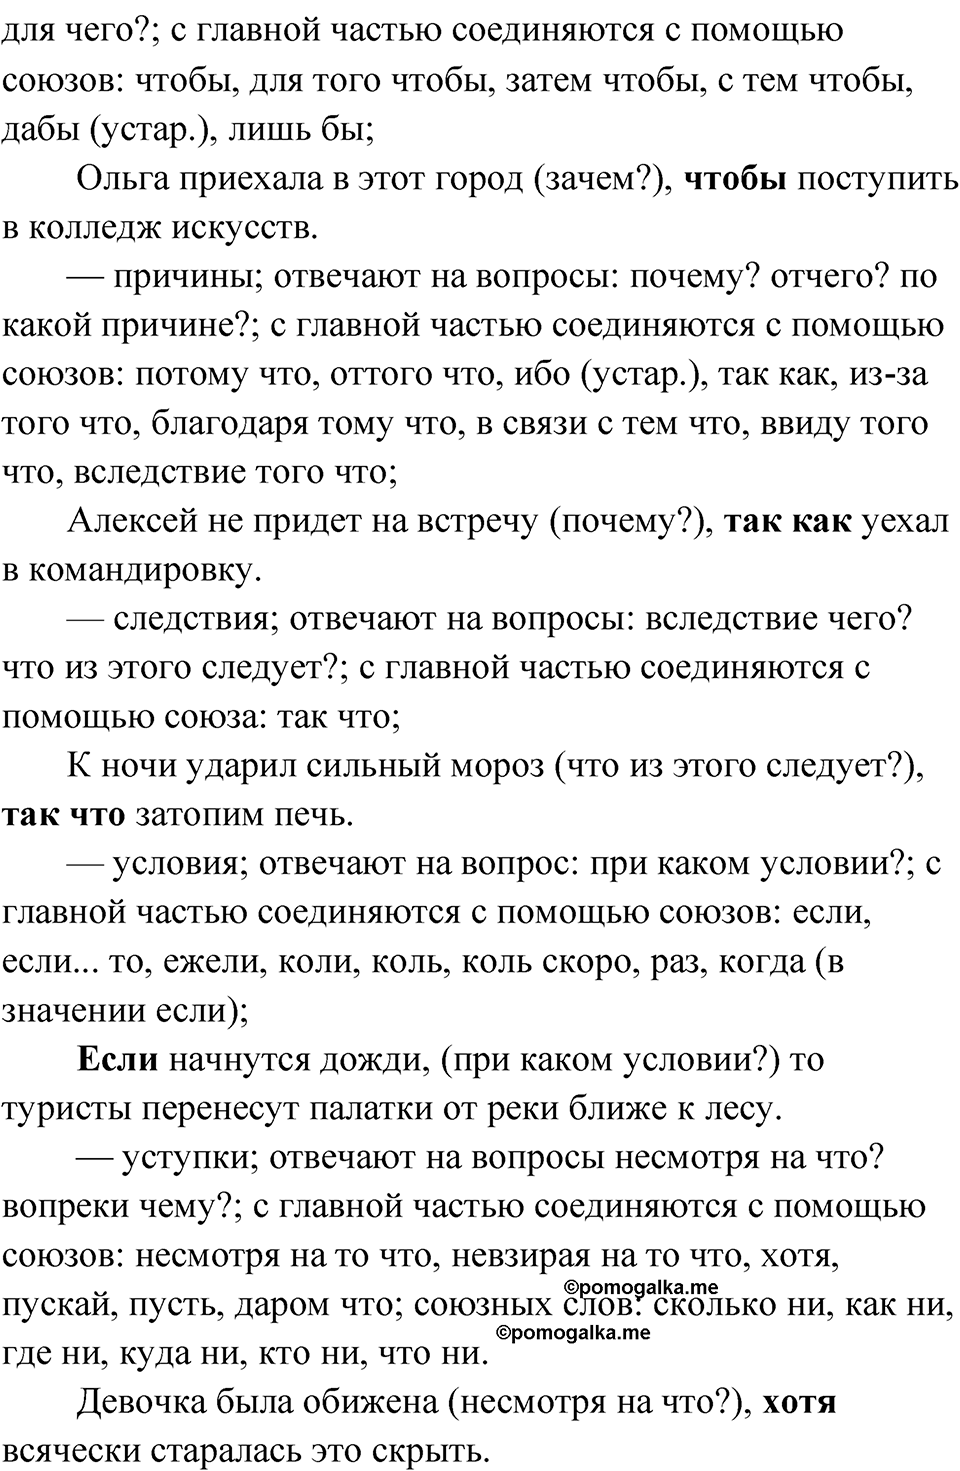 страница 178 упражнение 137 русский язык 9 класс Быстрова 1 часть 2022 год